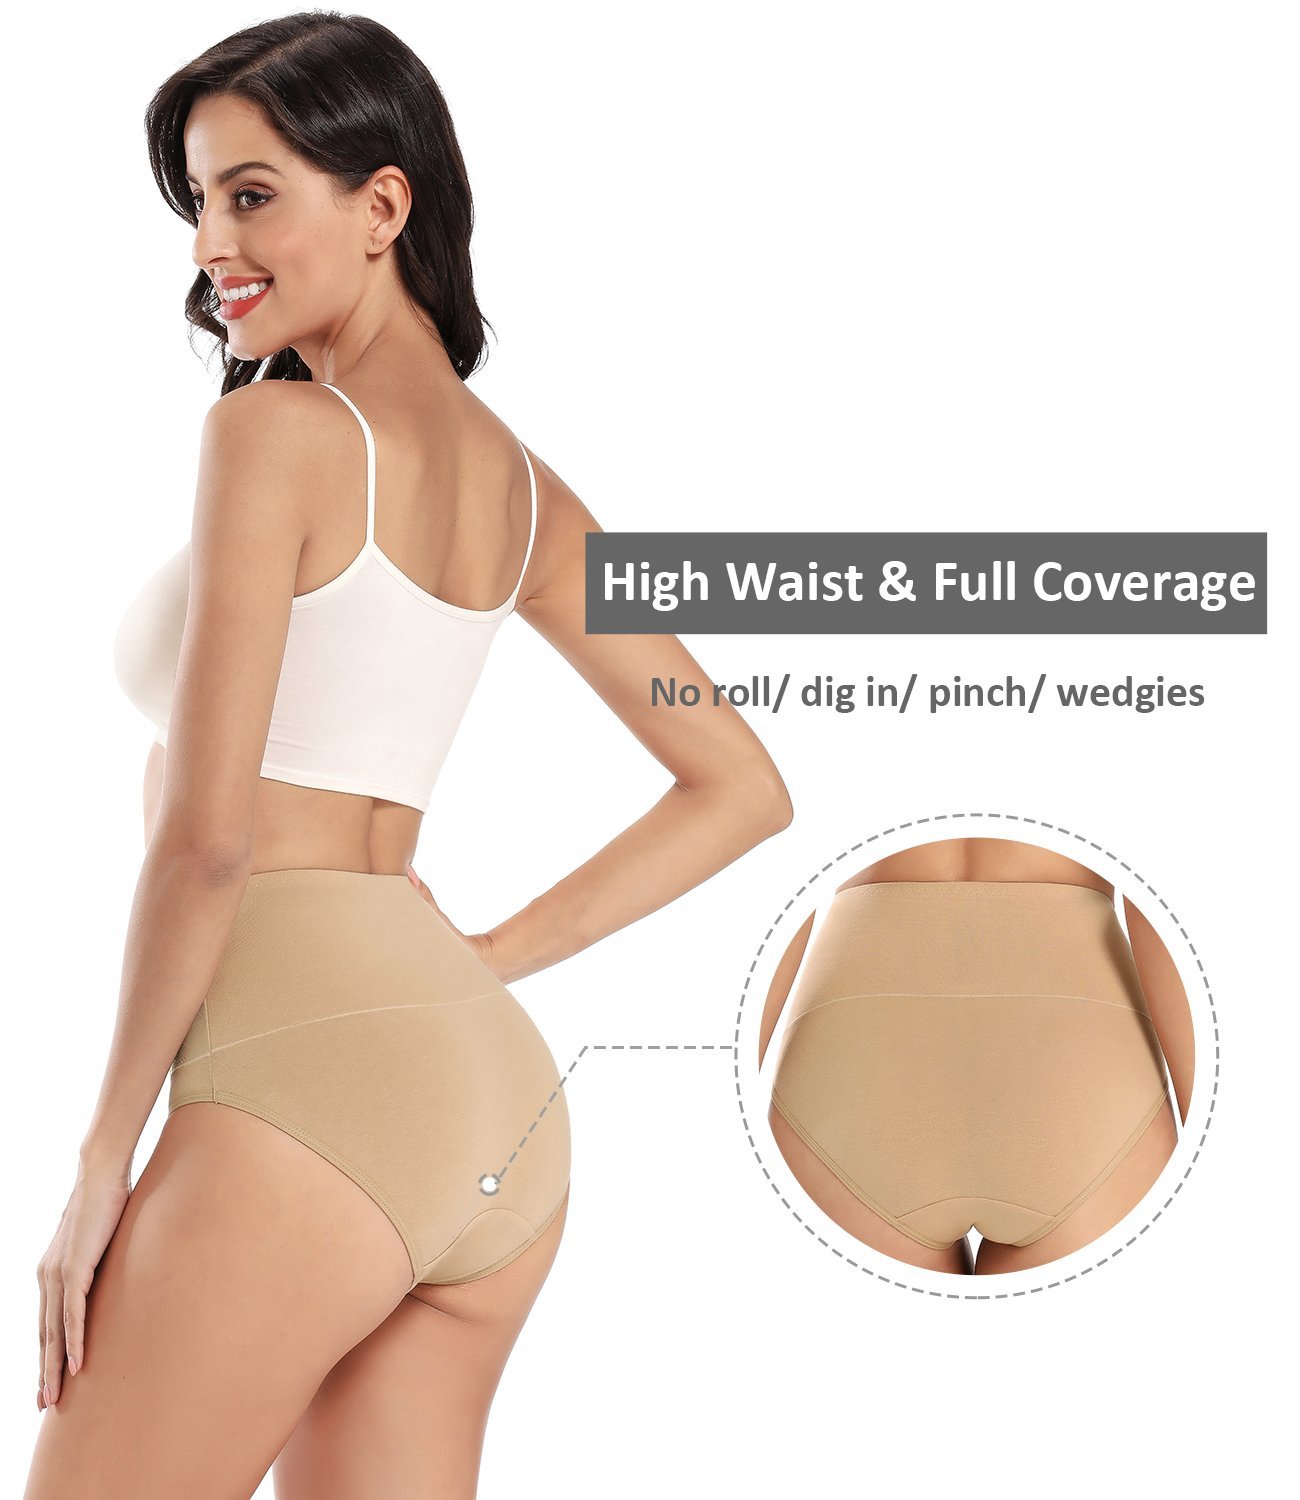 Women's High Waisted Cotton Briefs Underwear Ladies Comfortable